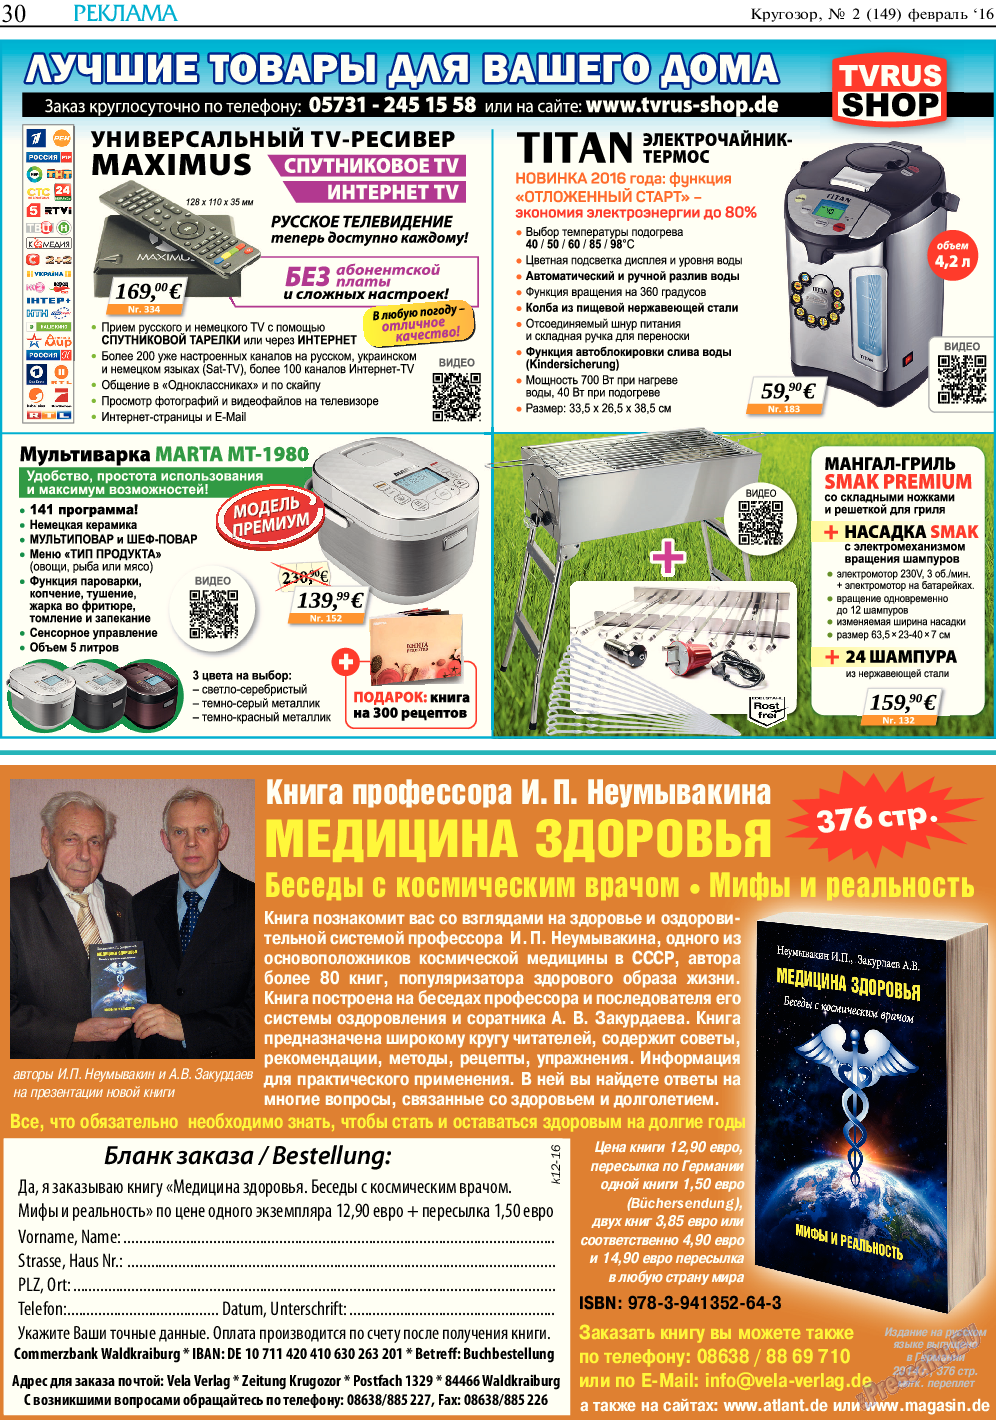 Кругозор, газета. 2016 №2 стр.30